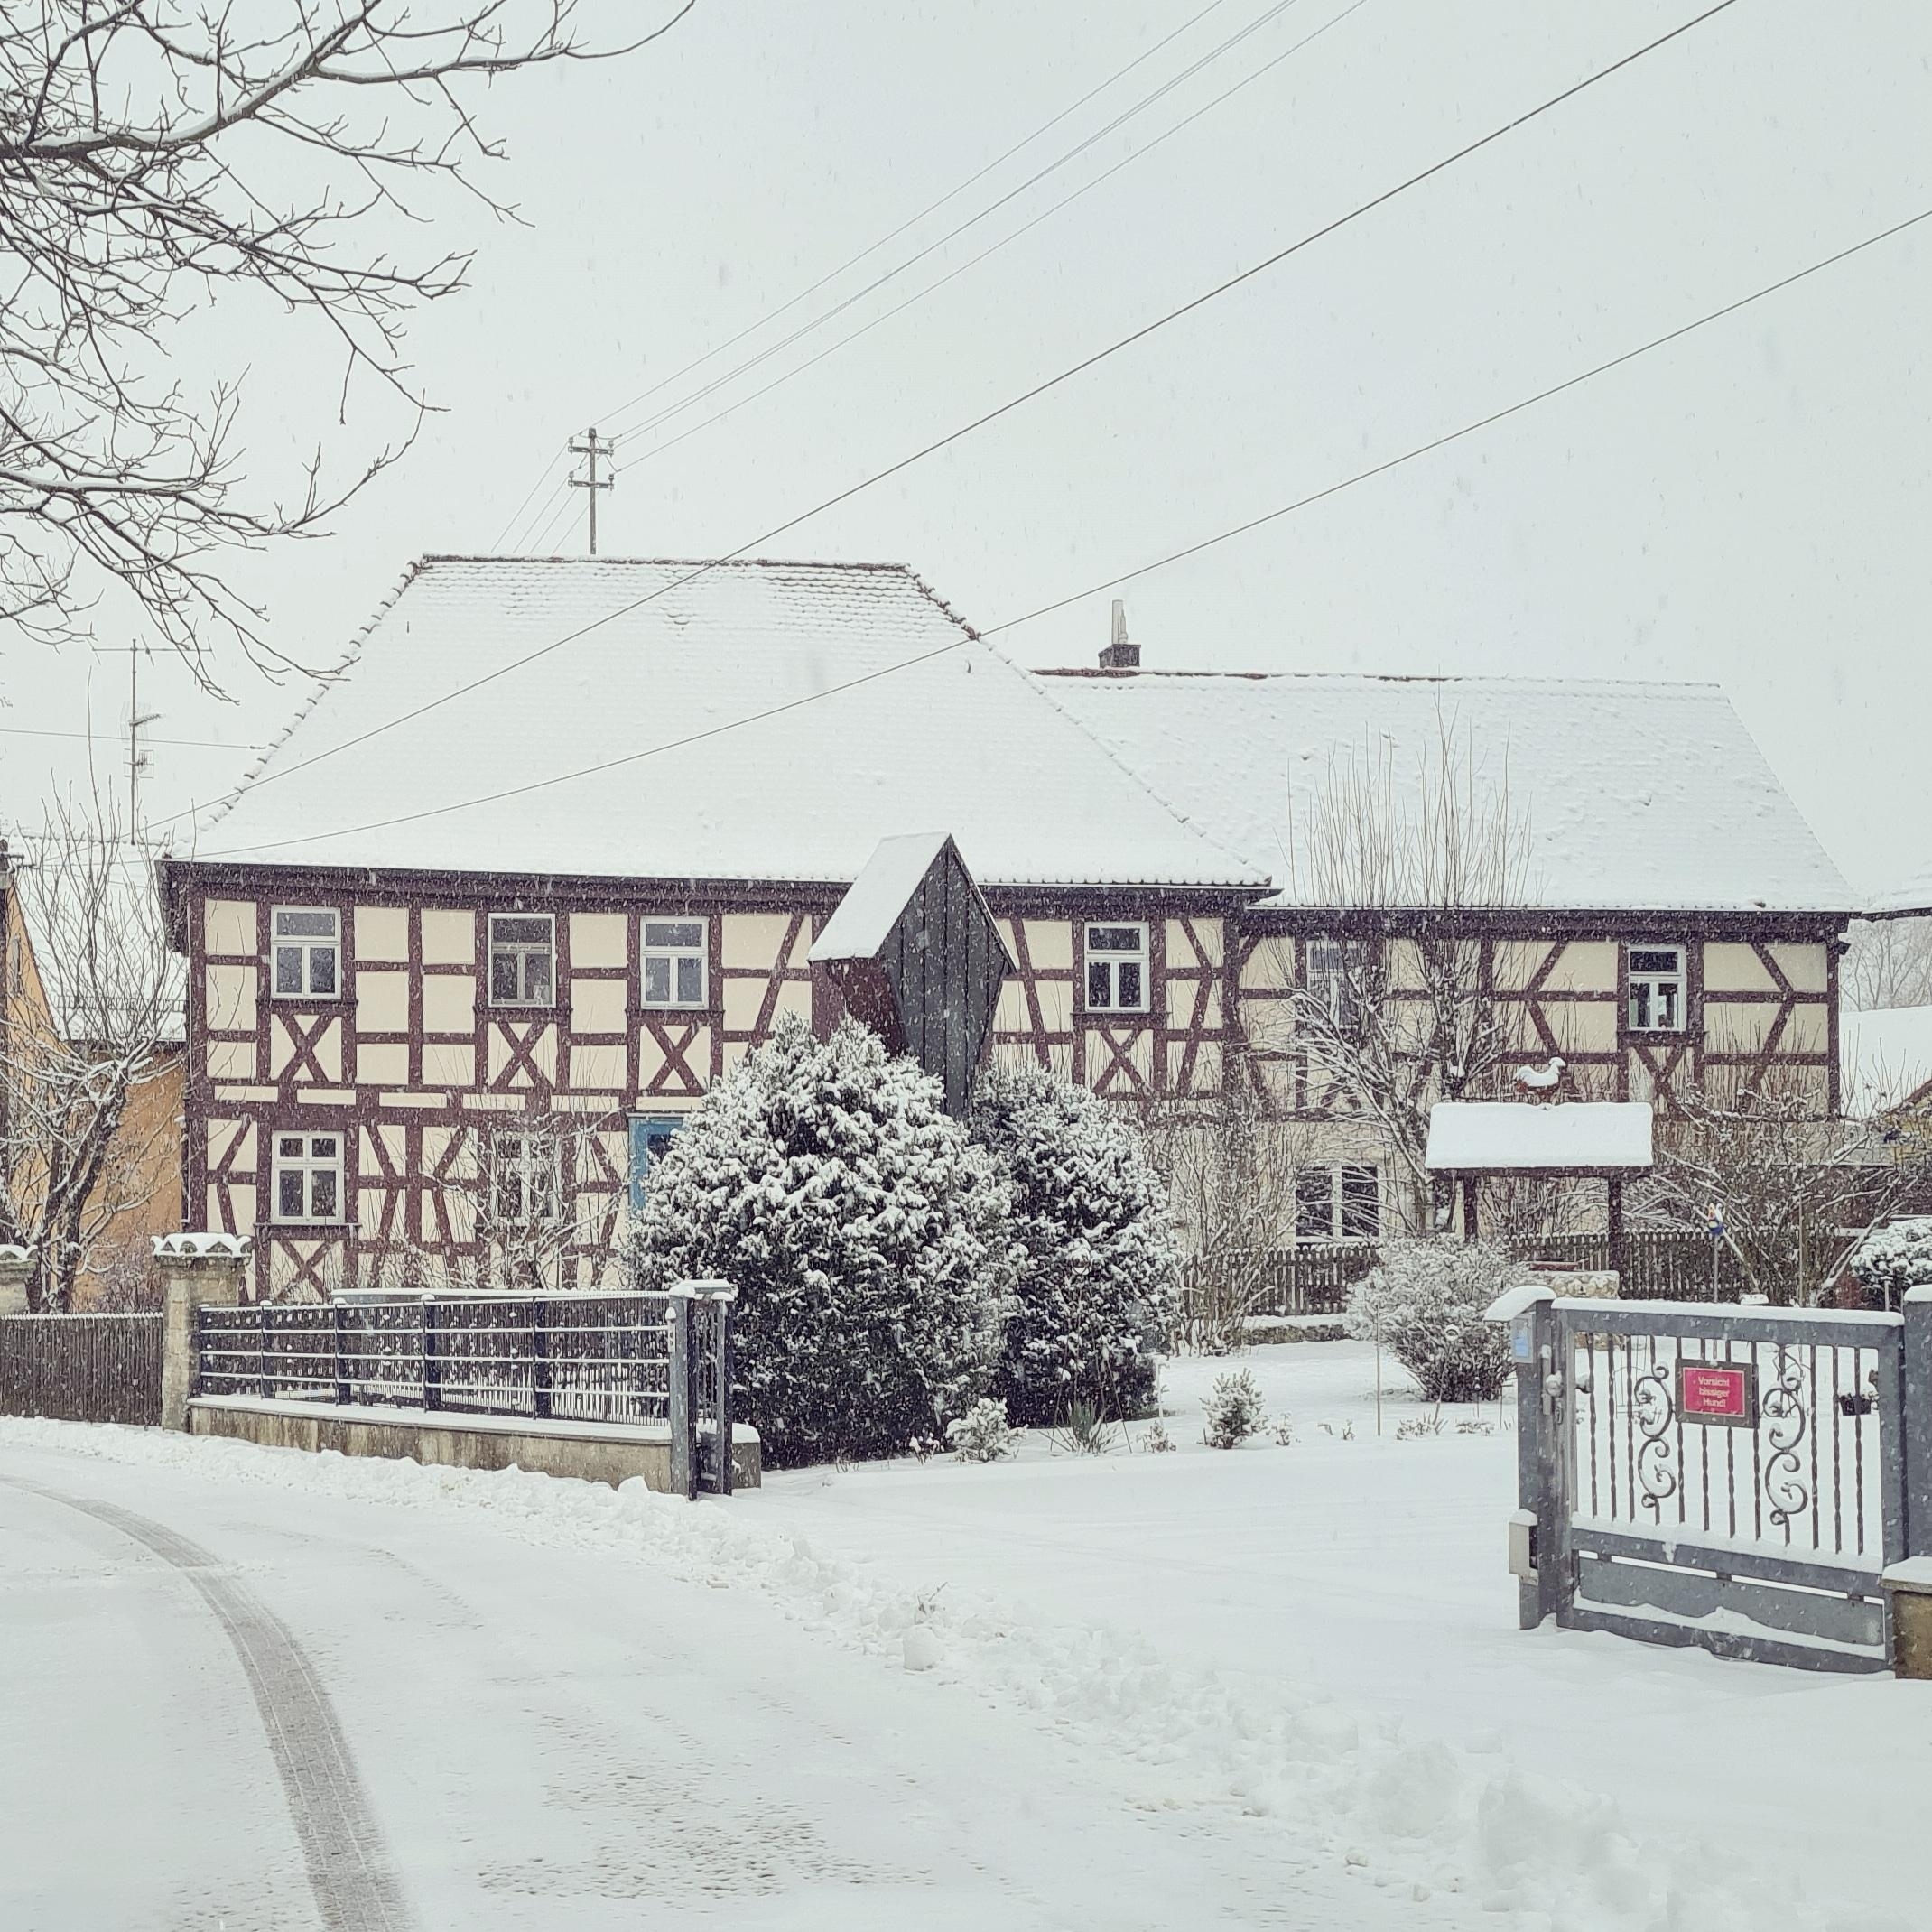 Unser #Traumhaus im #Schnee 
Darauf warte ich seit Wochen!